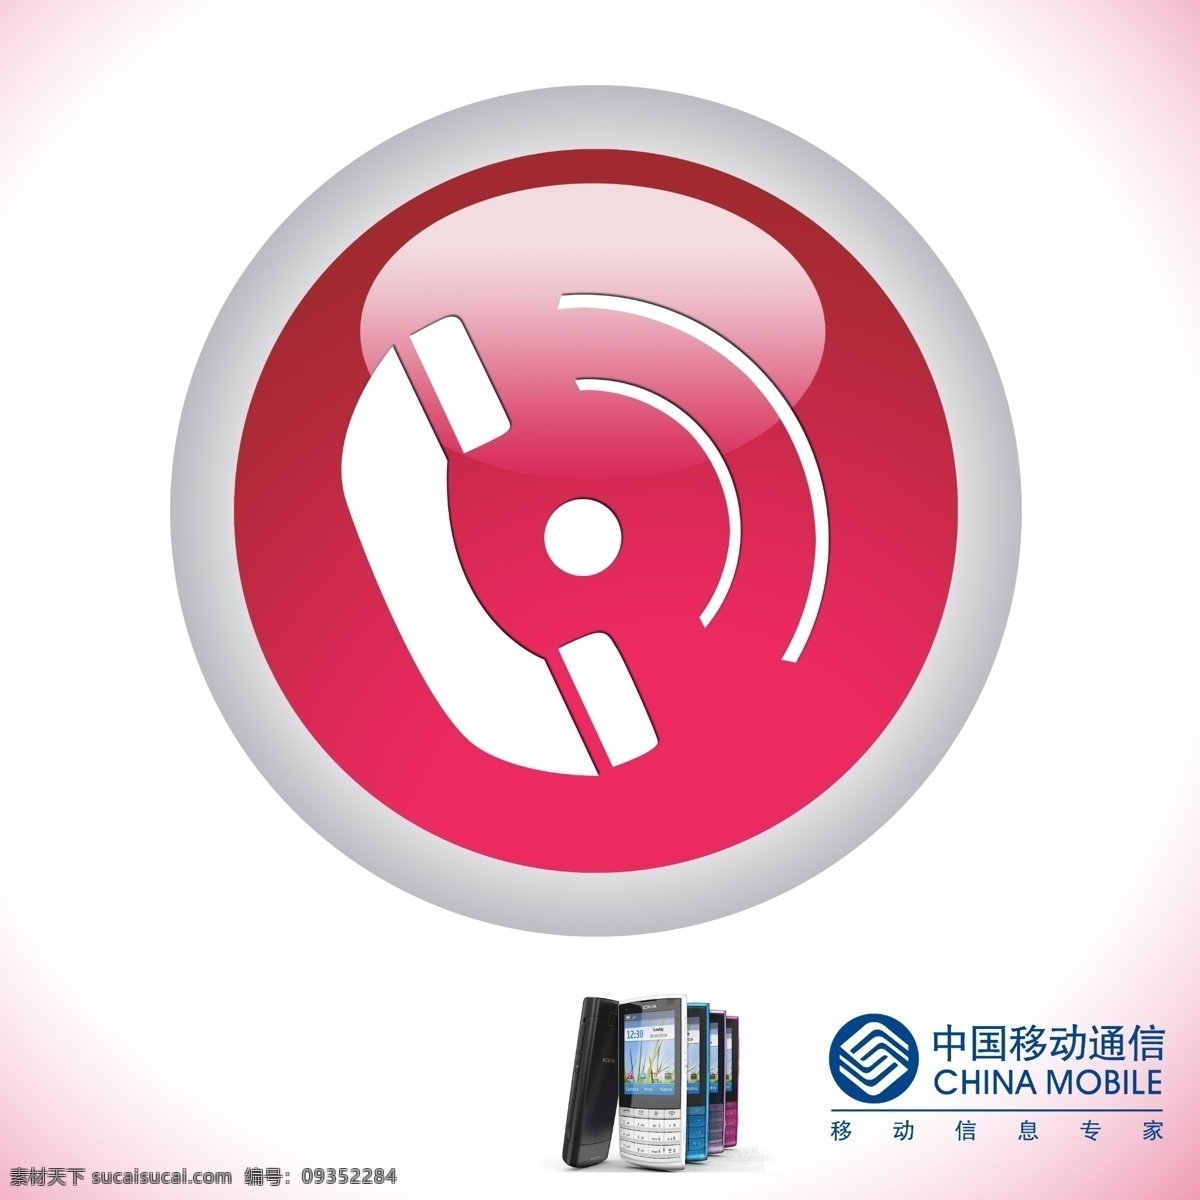 分层 电话 电话机 电话机图标 电话图标 手机 图标 源文件 电话按钮 网页电话按钮 中国移动标志 中国移动通信 矢量图 现代科技